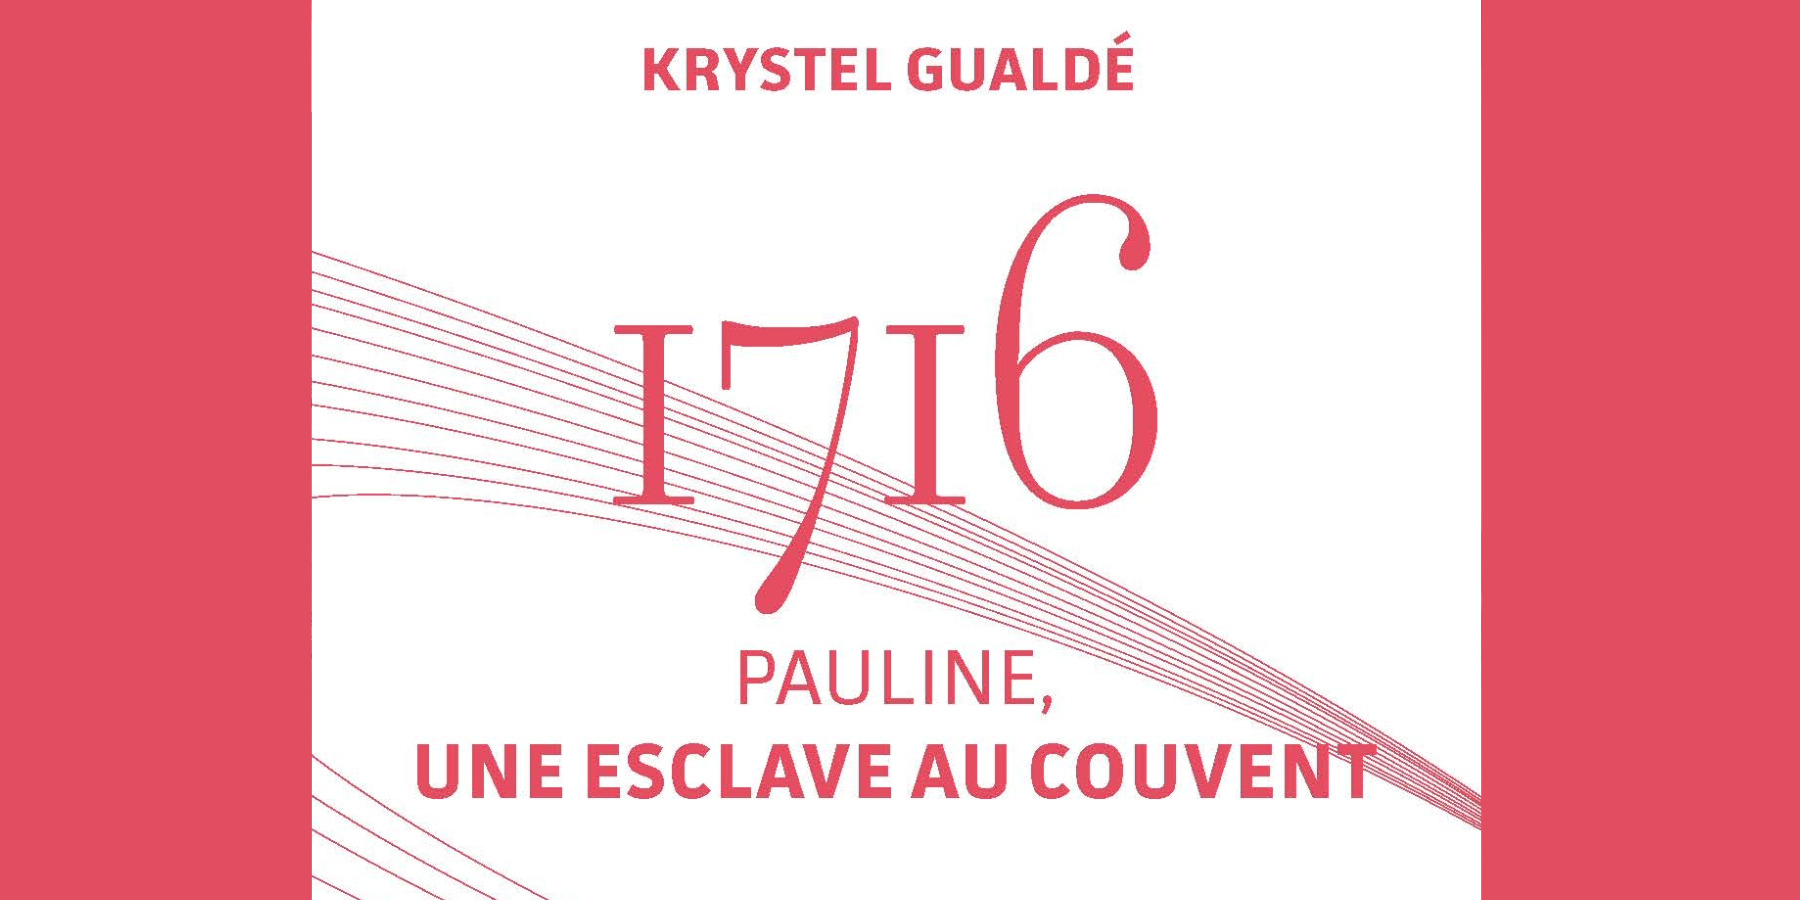 1716, Pauline, Une esclave au couvent